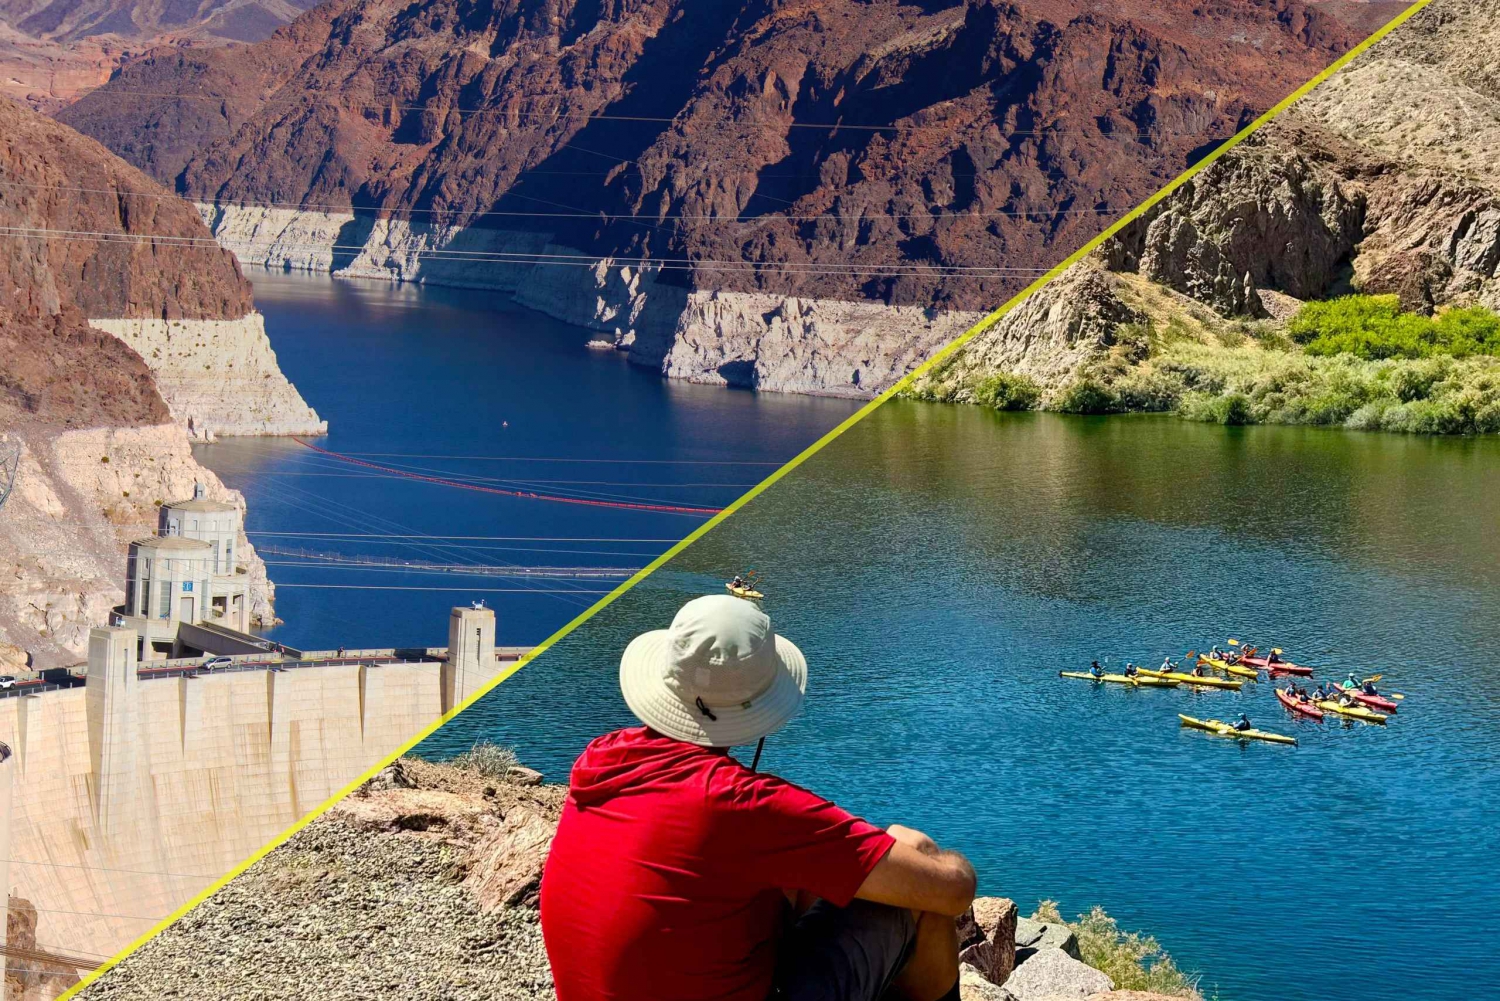 Ontsnappen aan de natuur: Kajakken met gids + Hoover Dam wandeltour